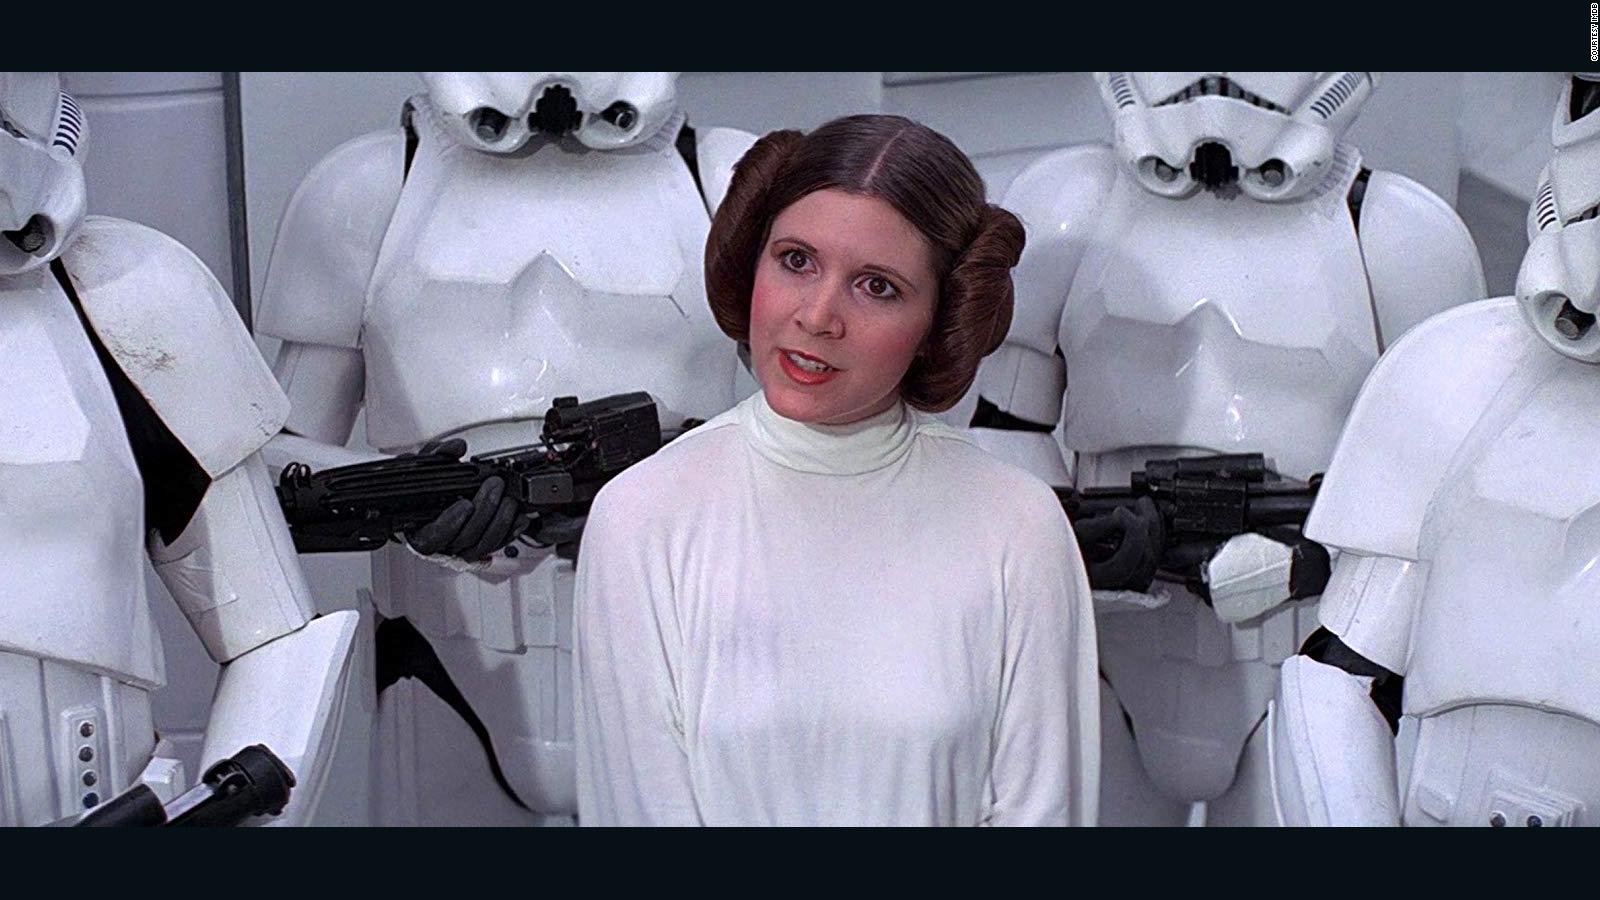 Recuerdas este peinado de la princesa Leia? | Video | CNN